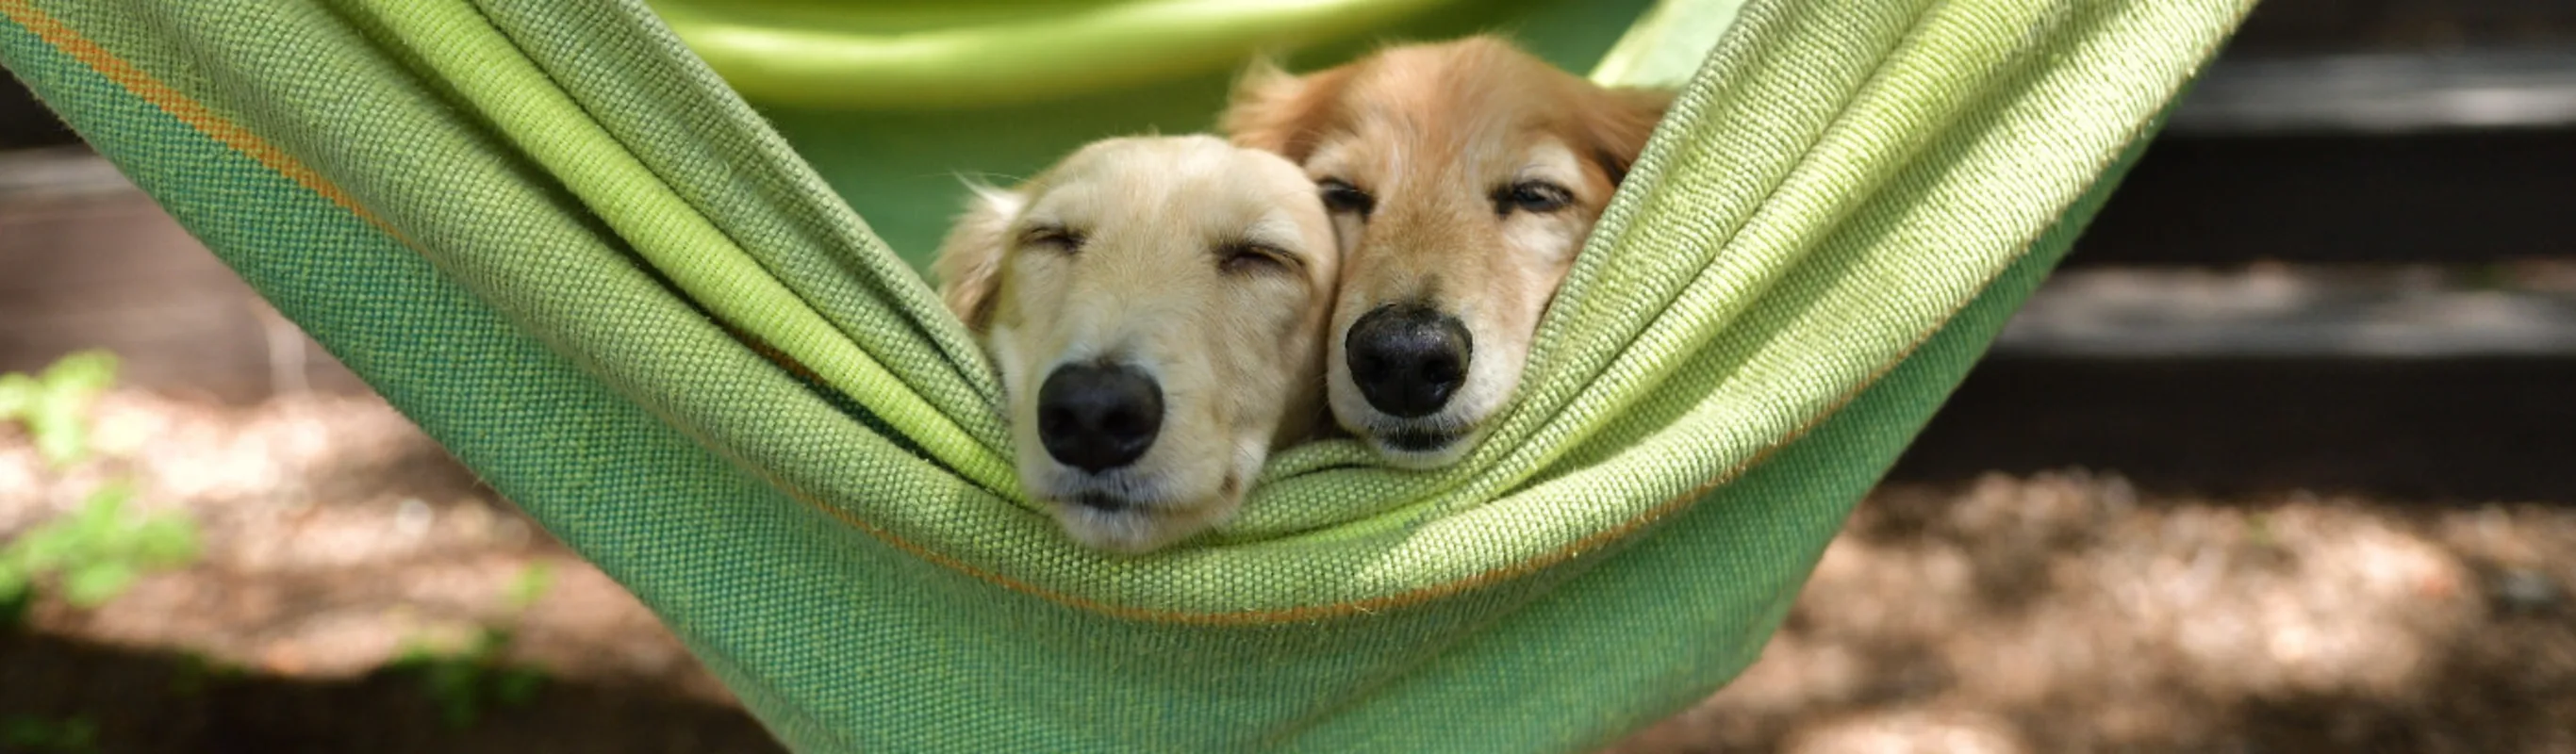 Two Dogs Sleeping in a Green Hammock